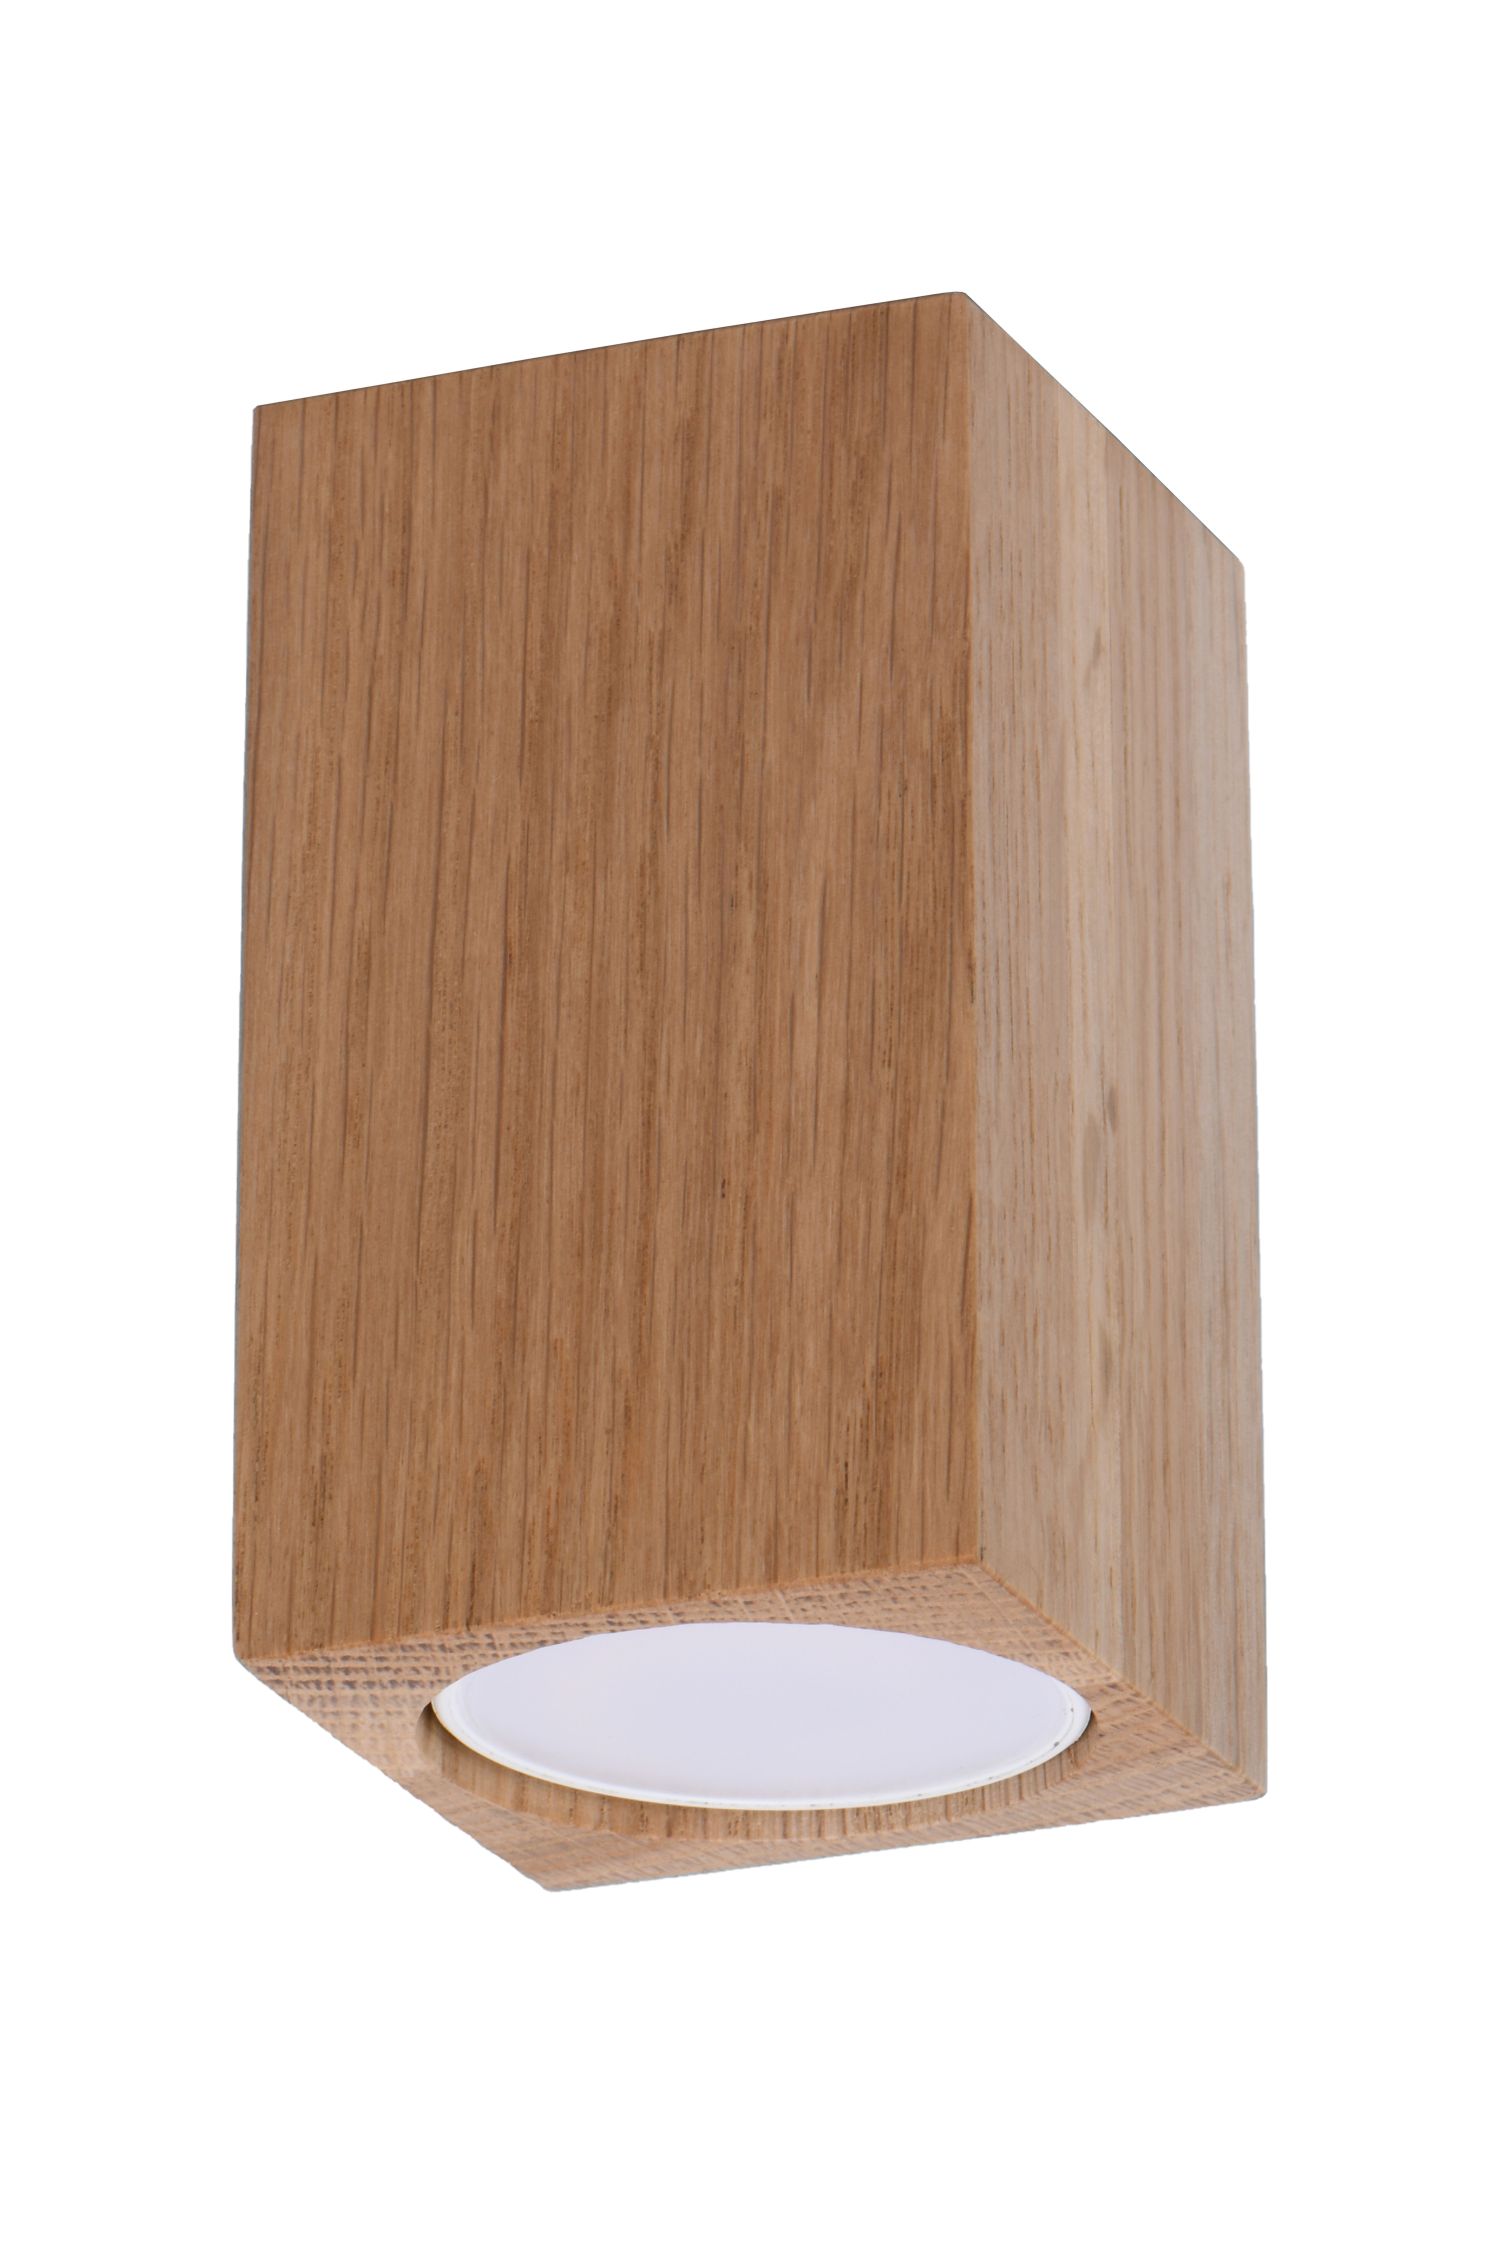 Spot Lampe Decke Holz klein H: 10 cm eckig GU10